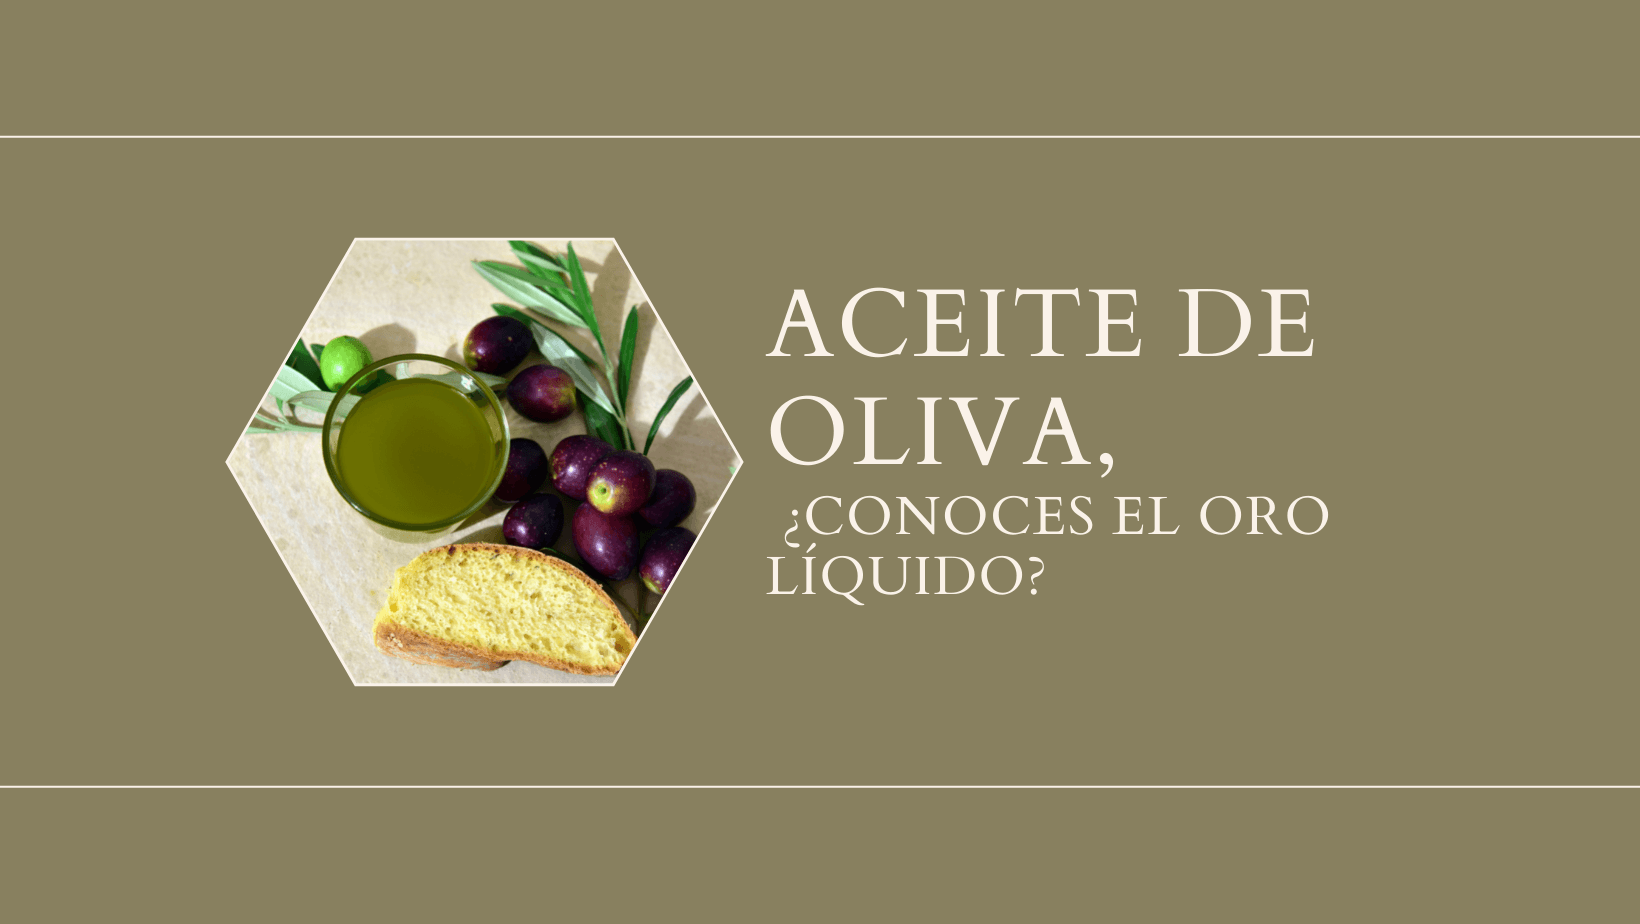 En este momento estás viendo Aceite de oliva, ¿conoces el oro líquido?